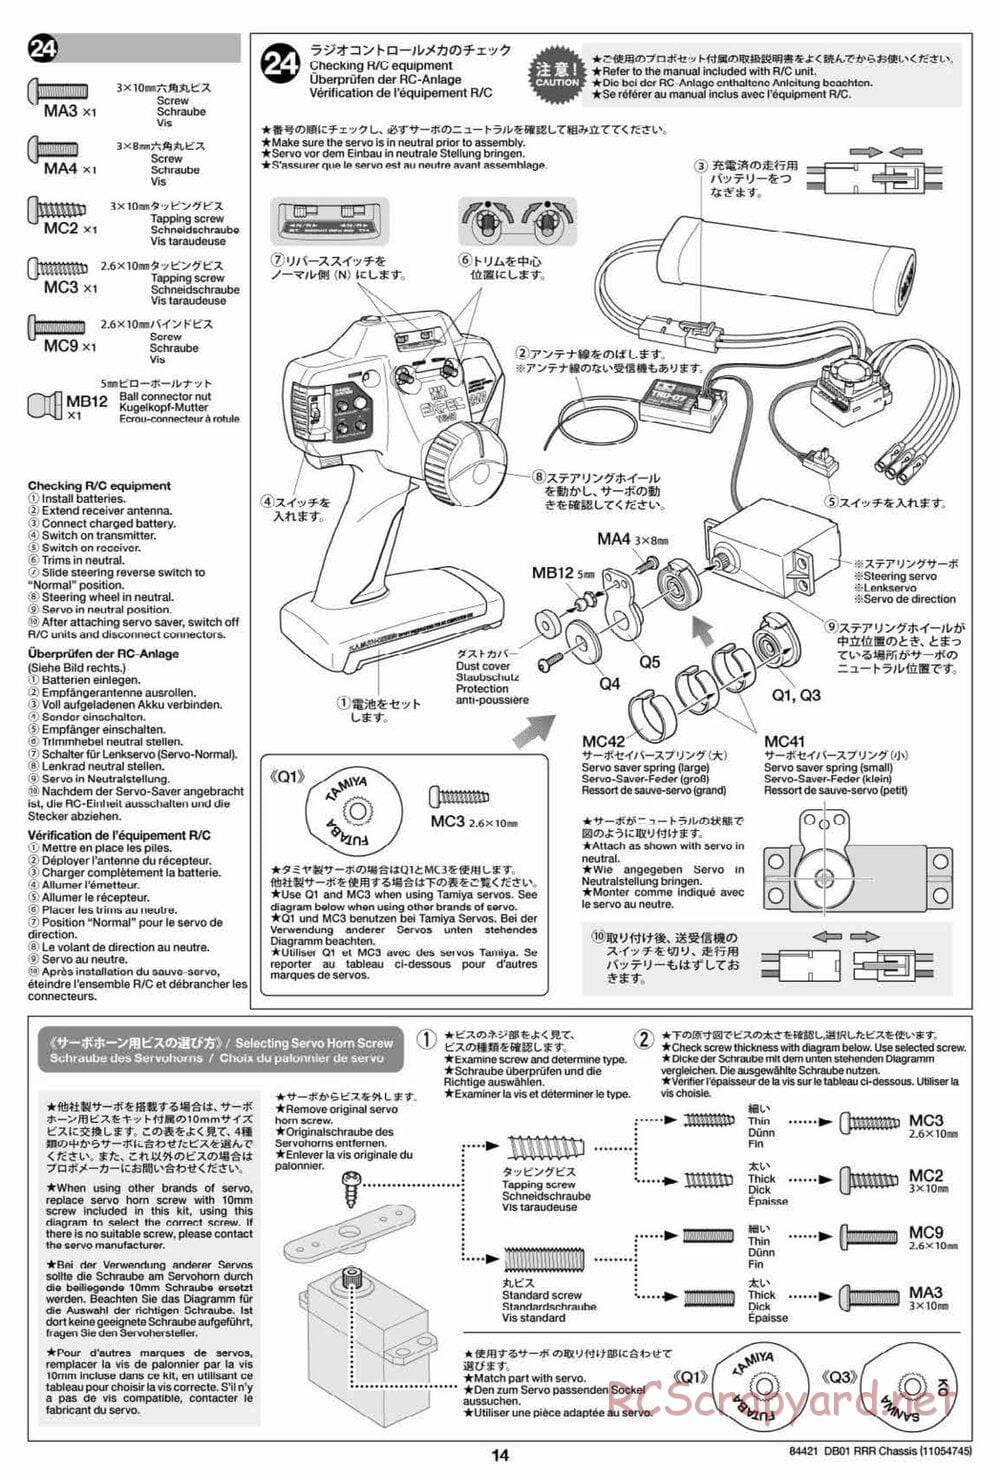 Tamiya - DB-01 RRR Chassis - Manual - Page 14